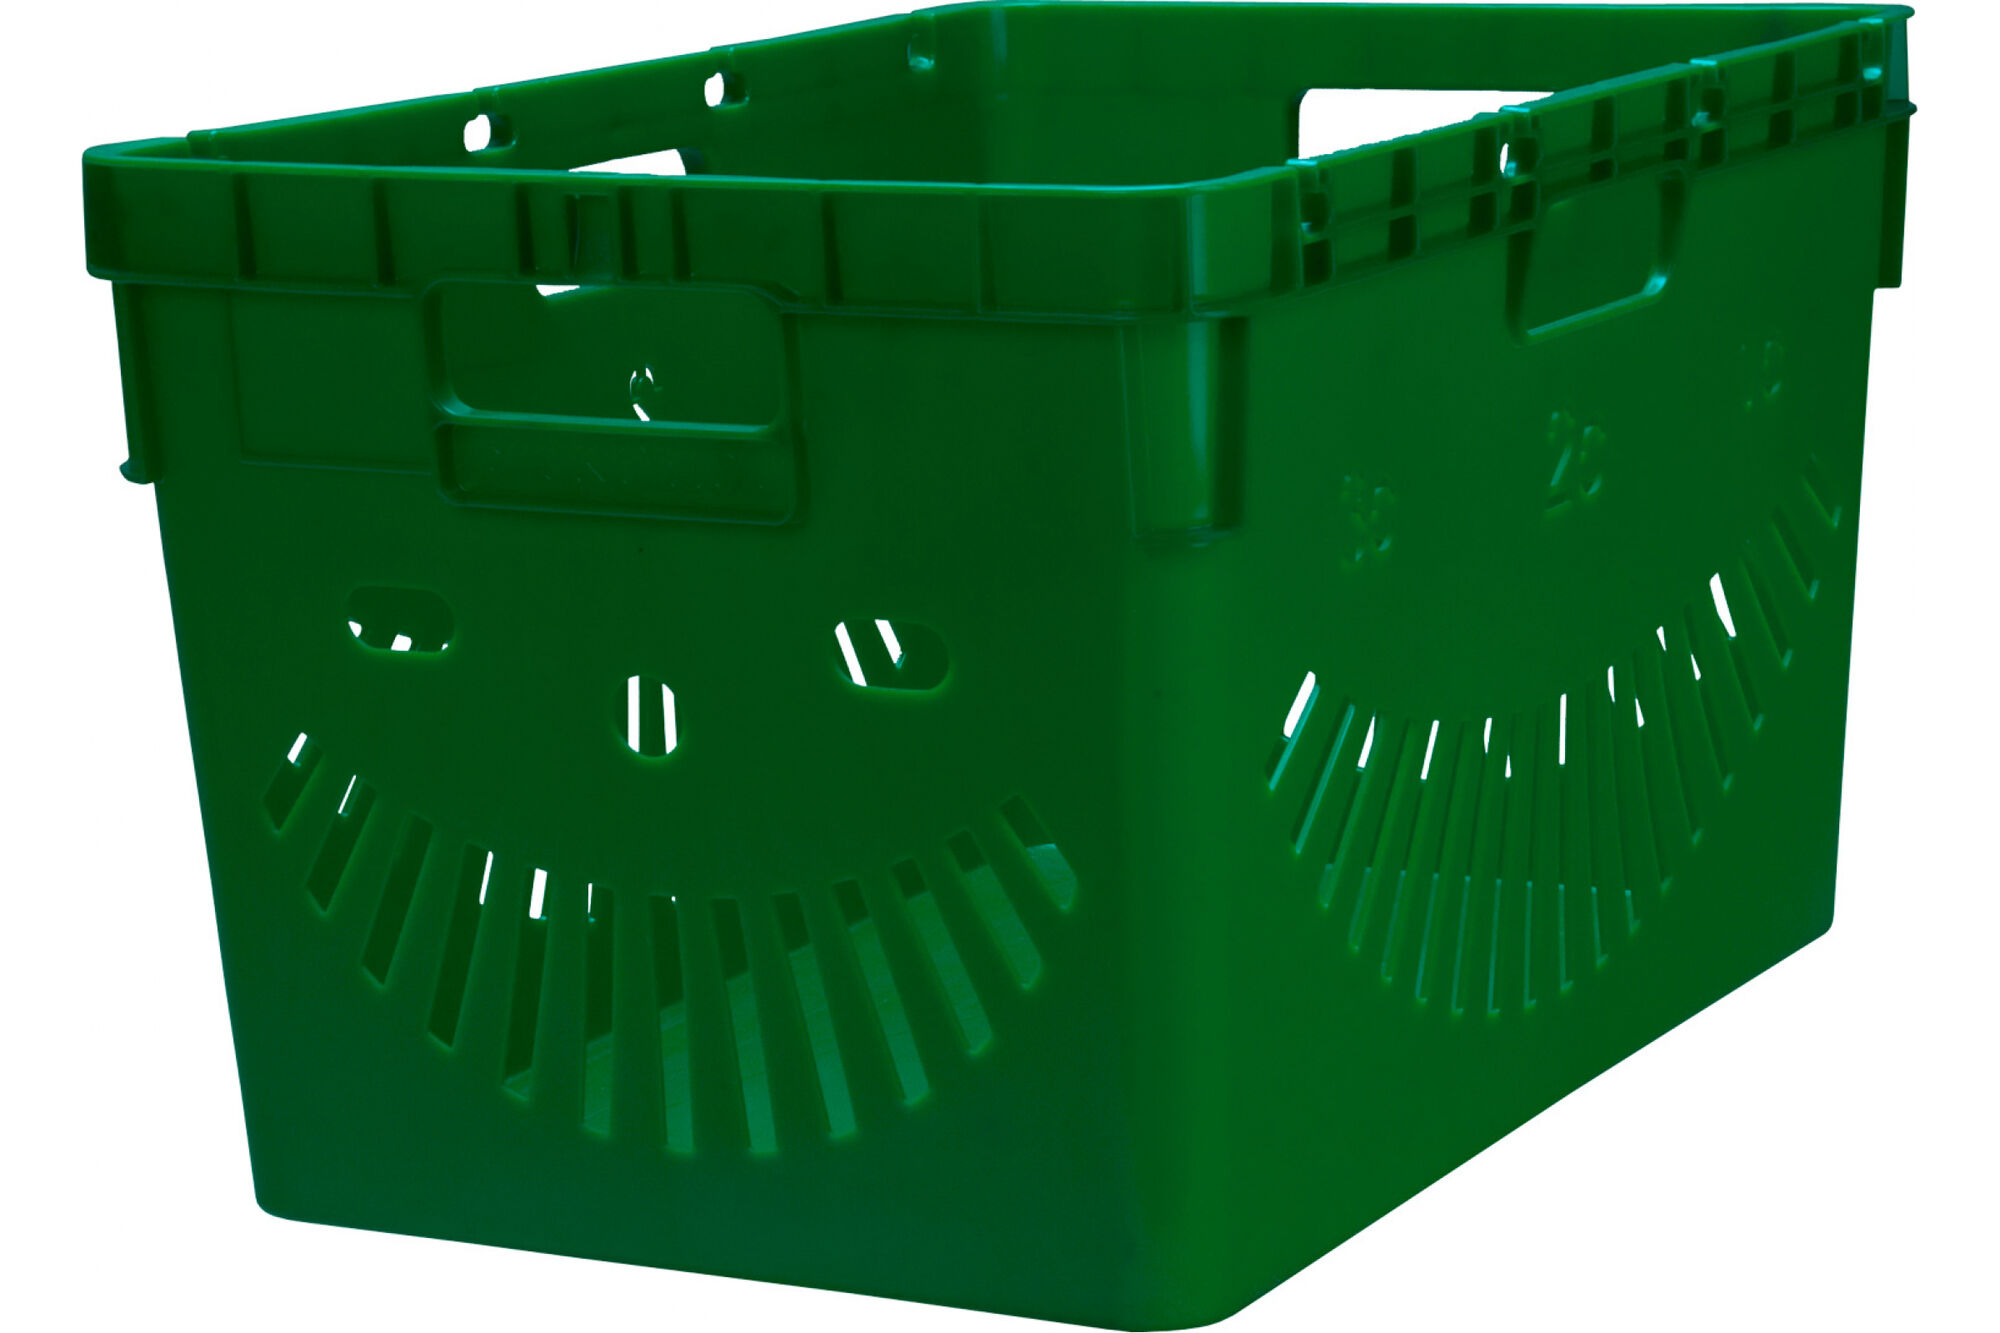 Ящик Тара.ру п/э, 600x400x340, перфорированный, стенки с отверстиями для пакетов, зеленый 10836